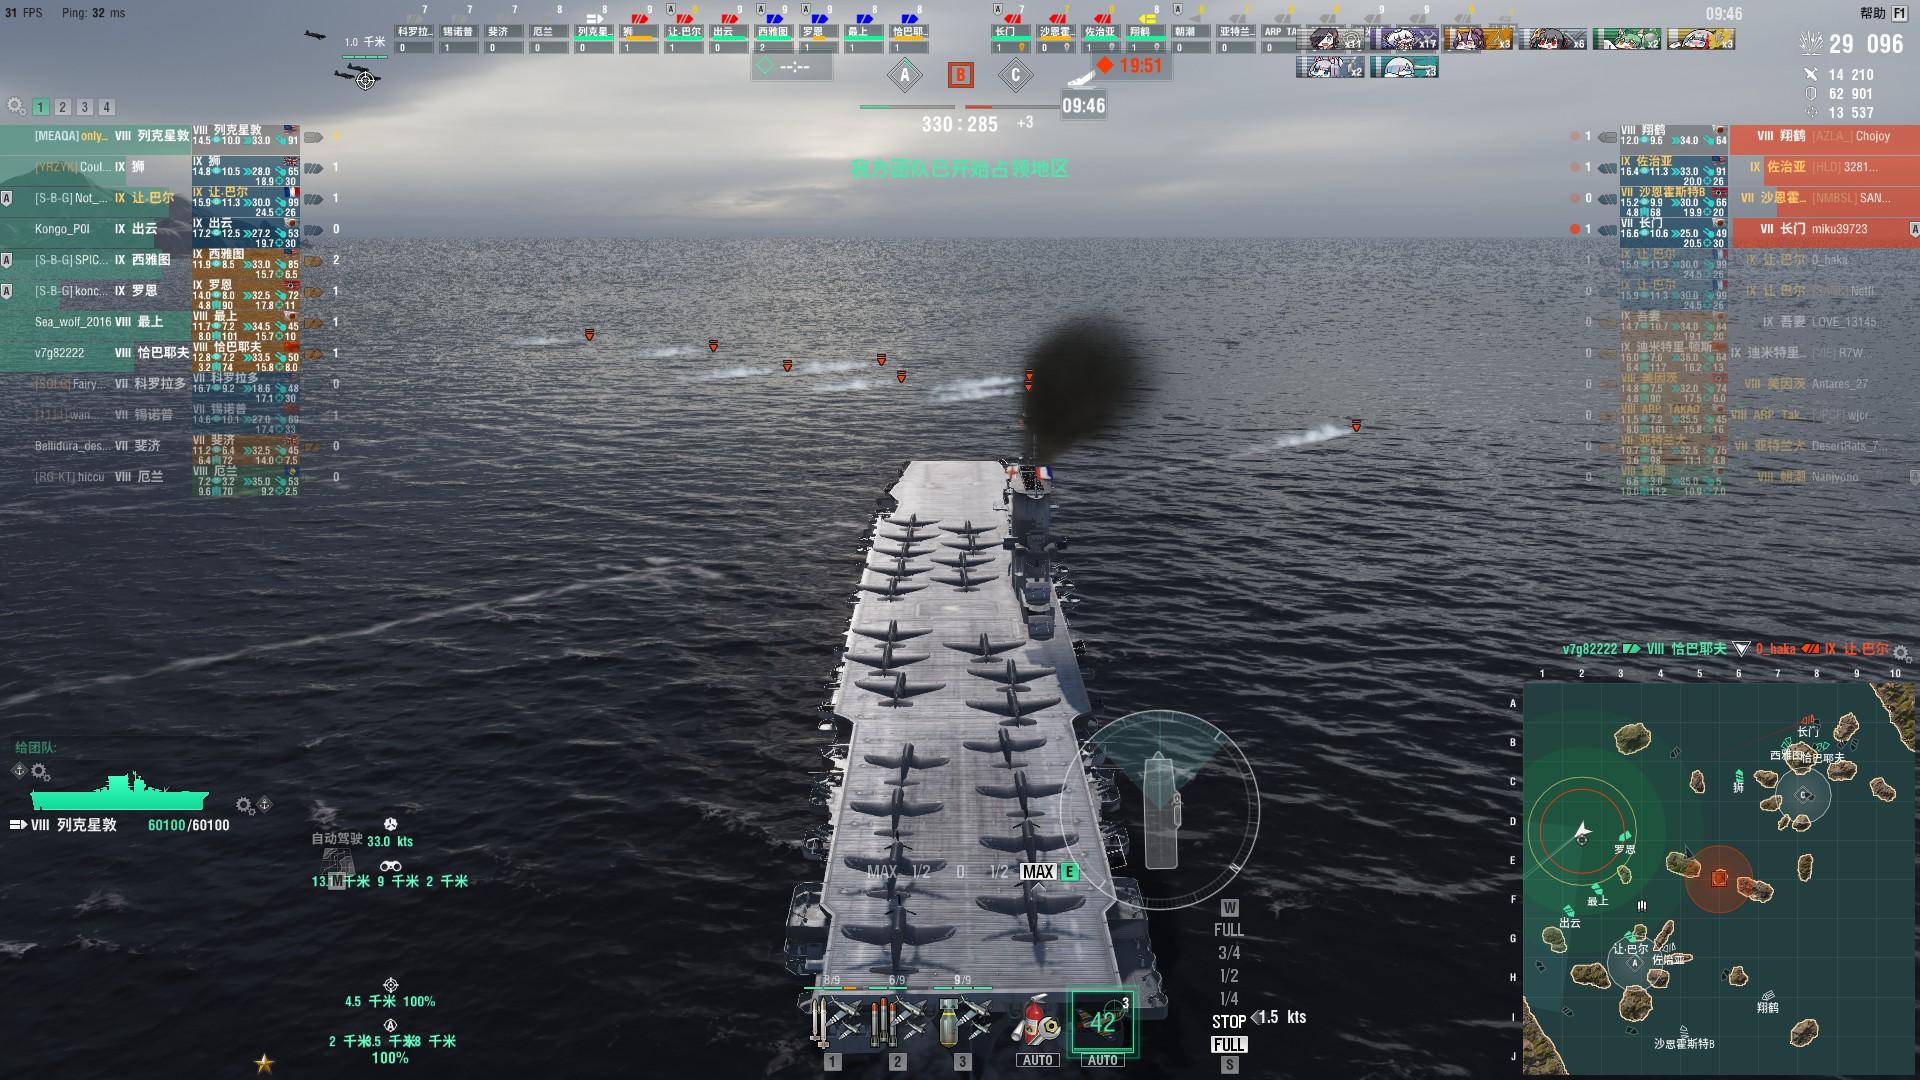 world of warships hakabase vs aslains